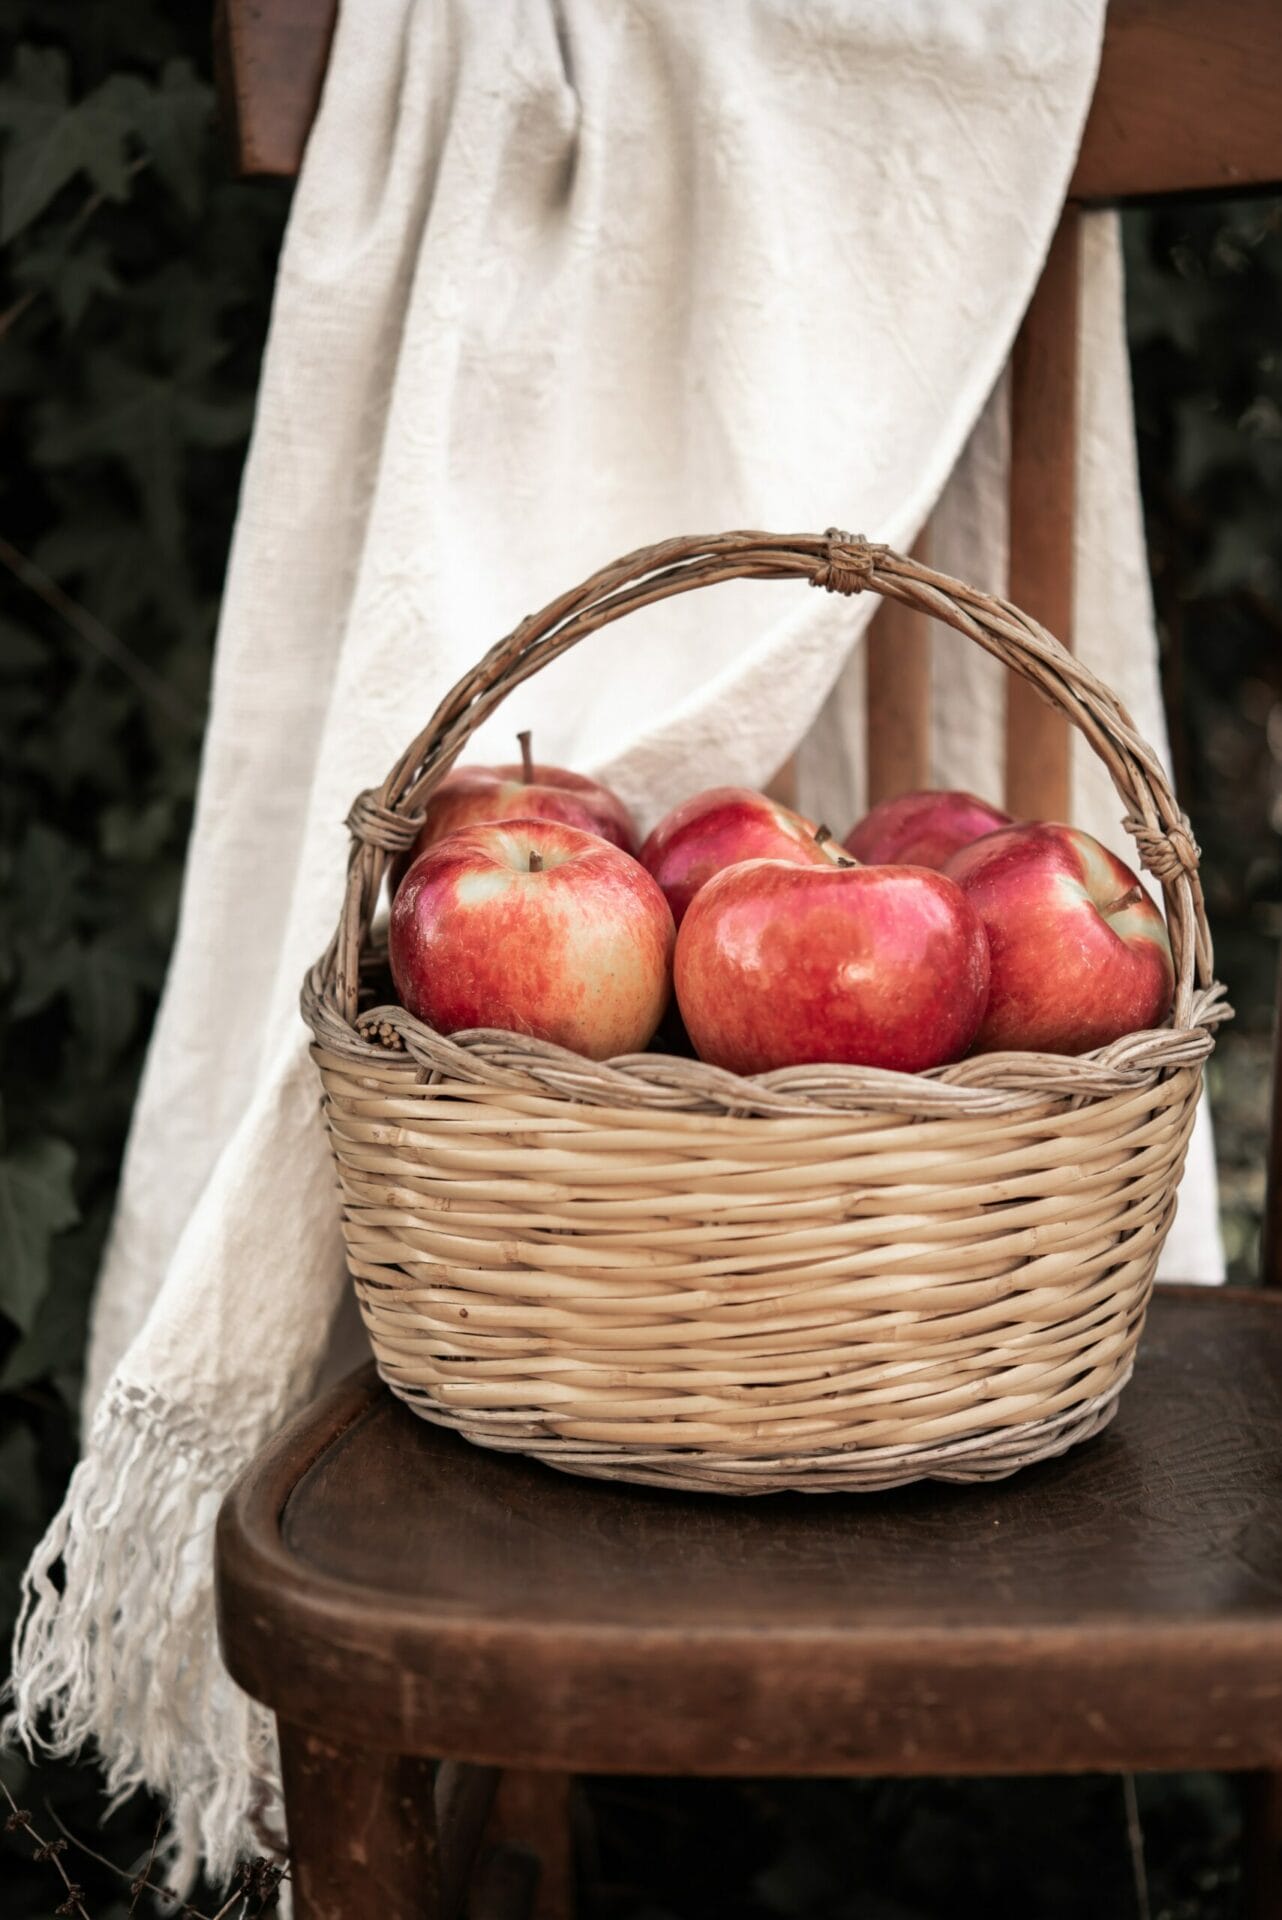 beneficios de la manzana